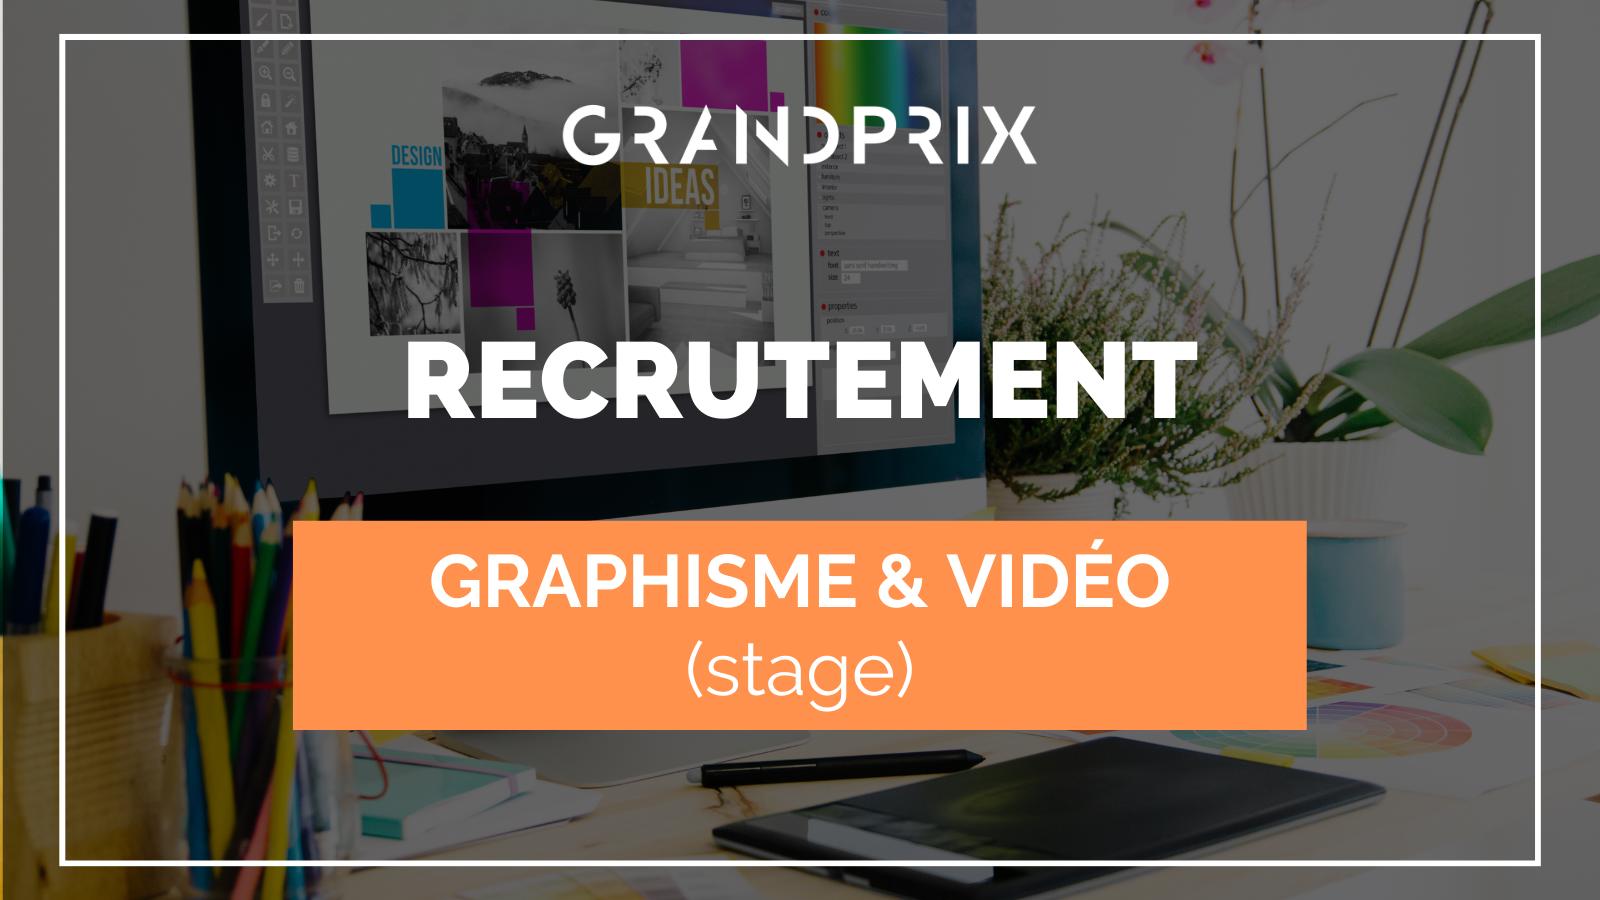 GRANDPRIX is op zoek naar een stagiair in contentcreatie, graphics en video